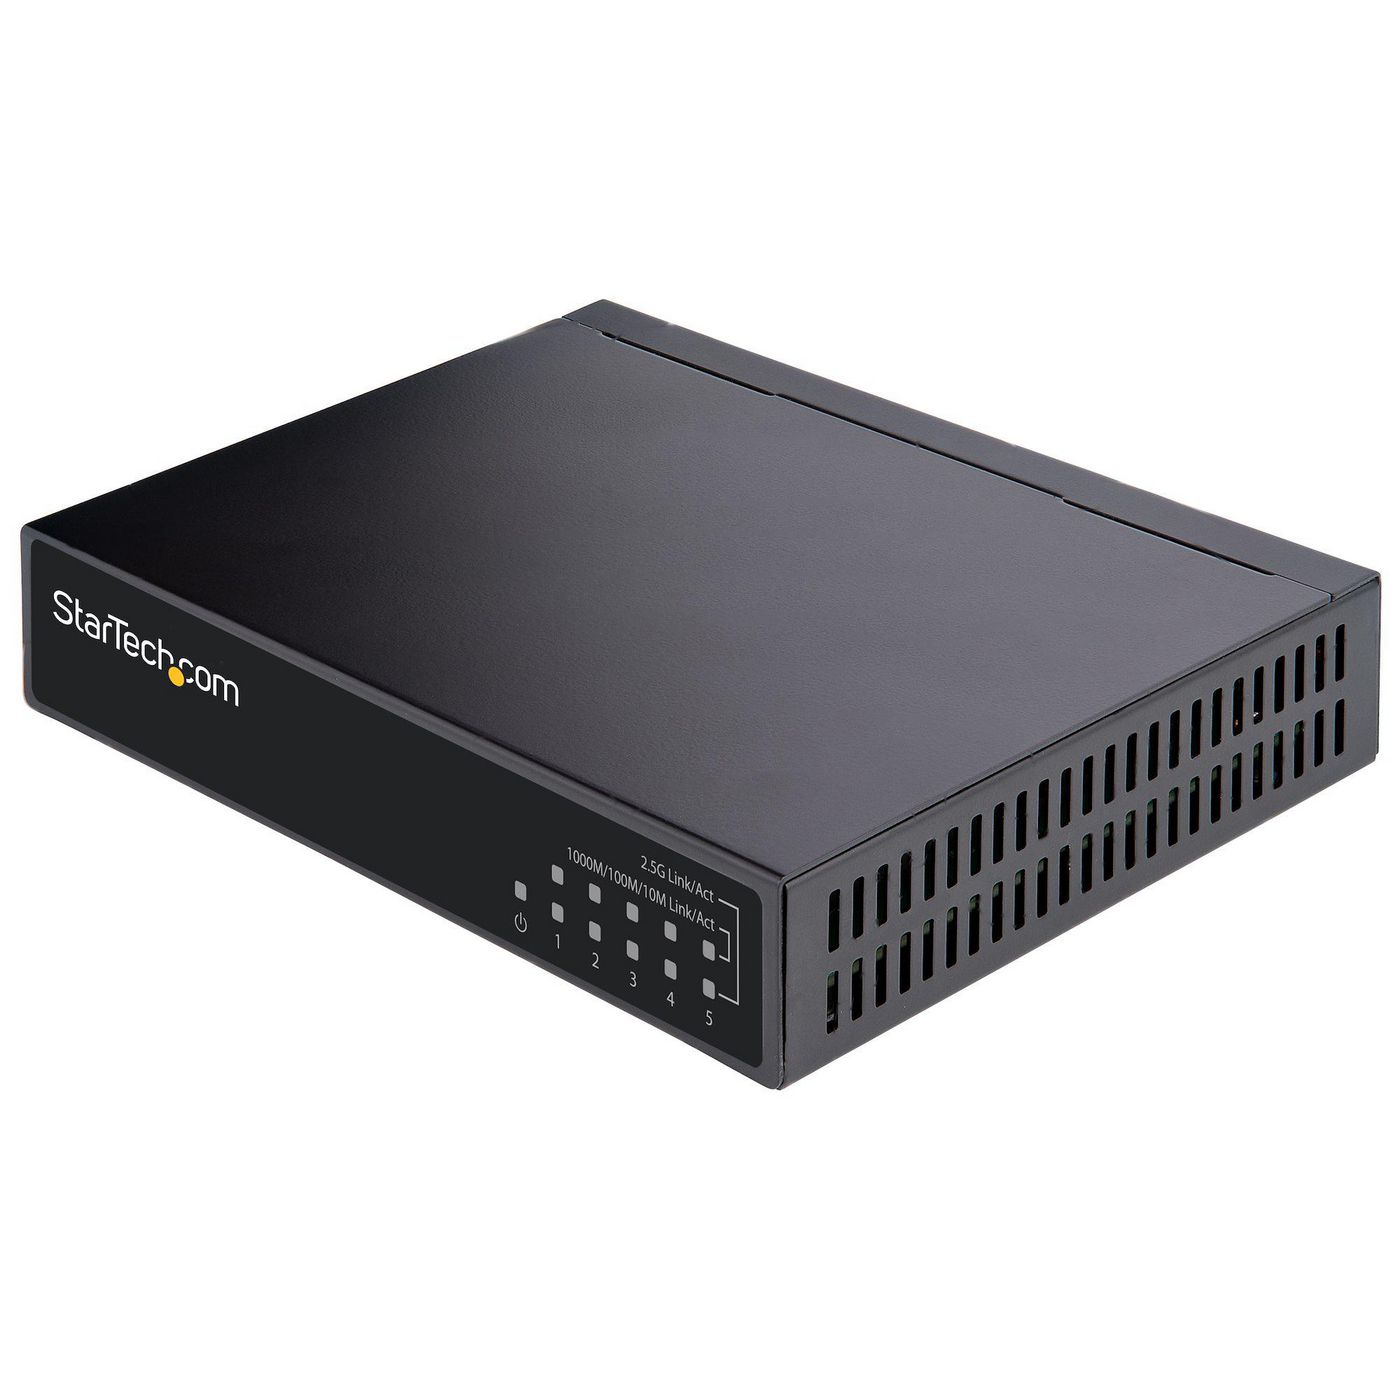 StarTechcom DS52000 W128275995 Unmanaged 2.5G Switch - 5 